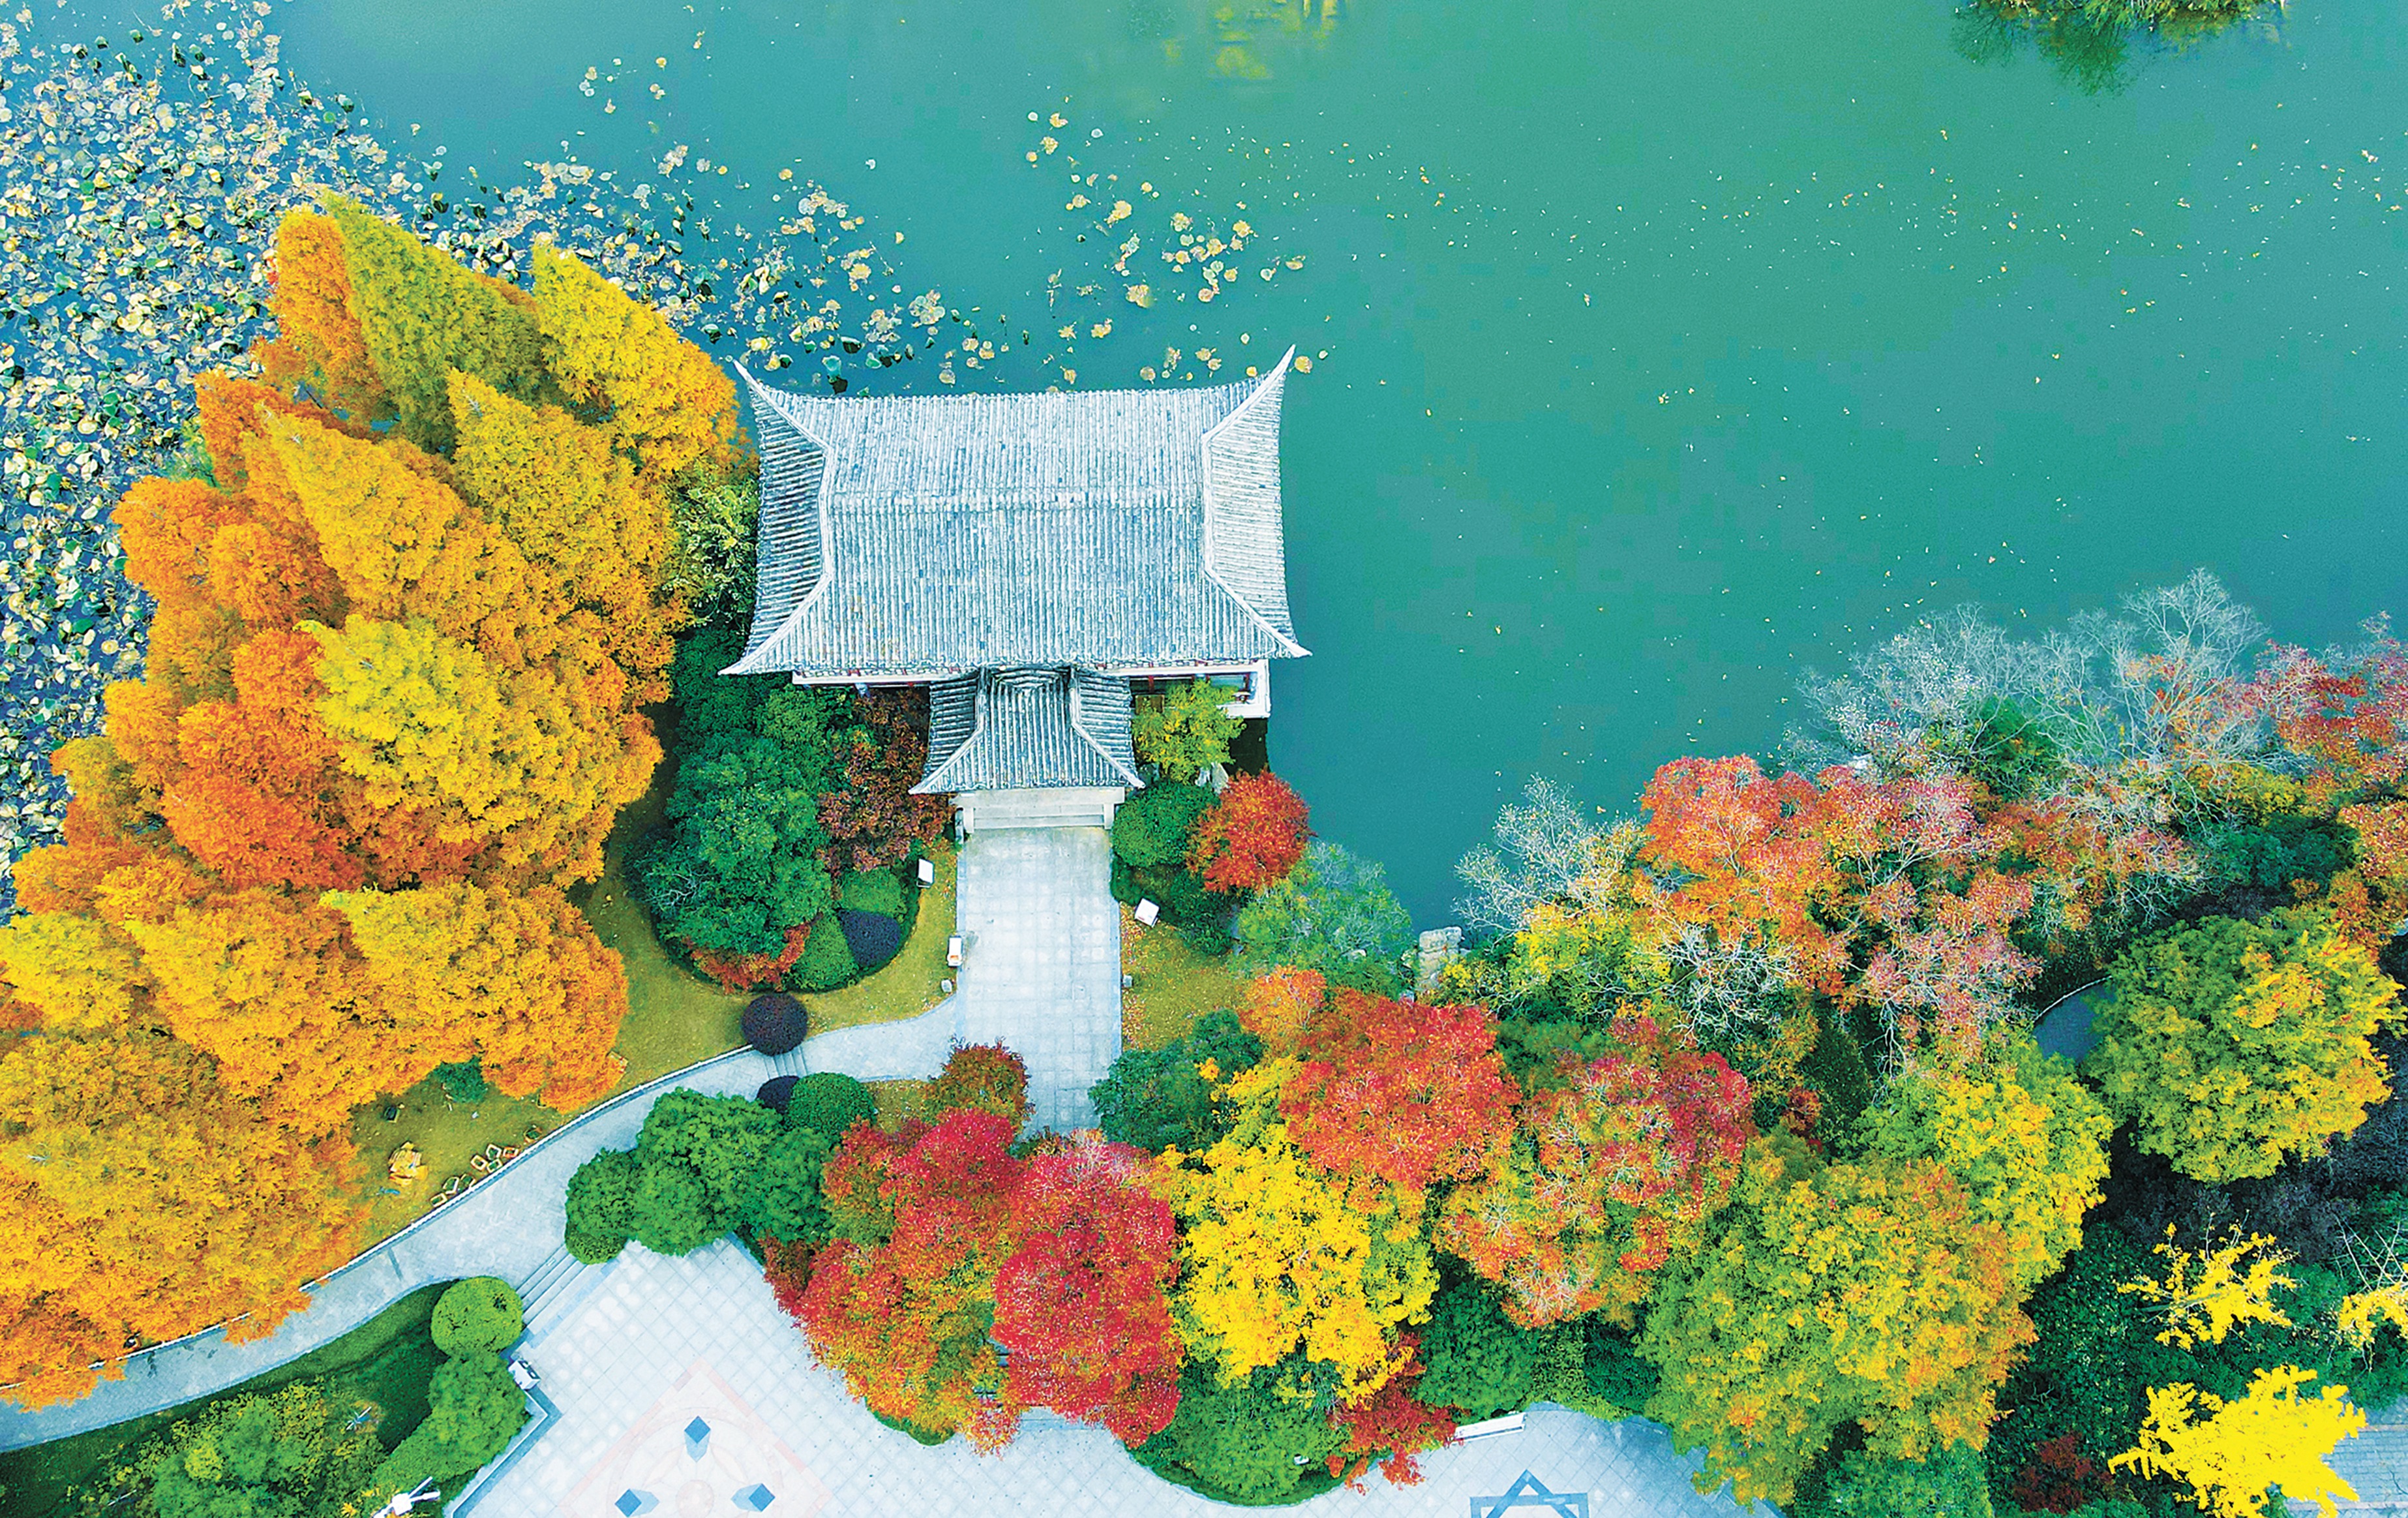 11月15日，初冬时节，徐州市区各公园景点层林尽染、色彩斑斓，景色如画、美不胜收，吸引了许多游客前来观赏。